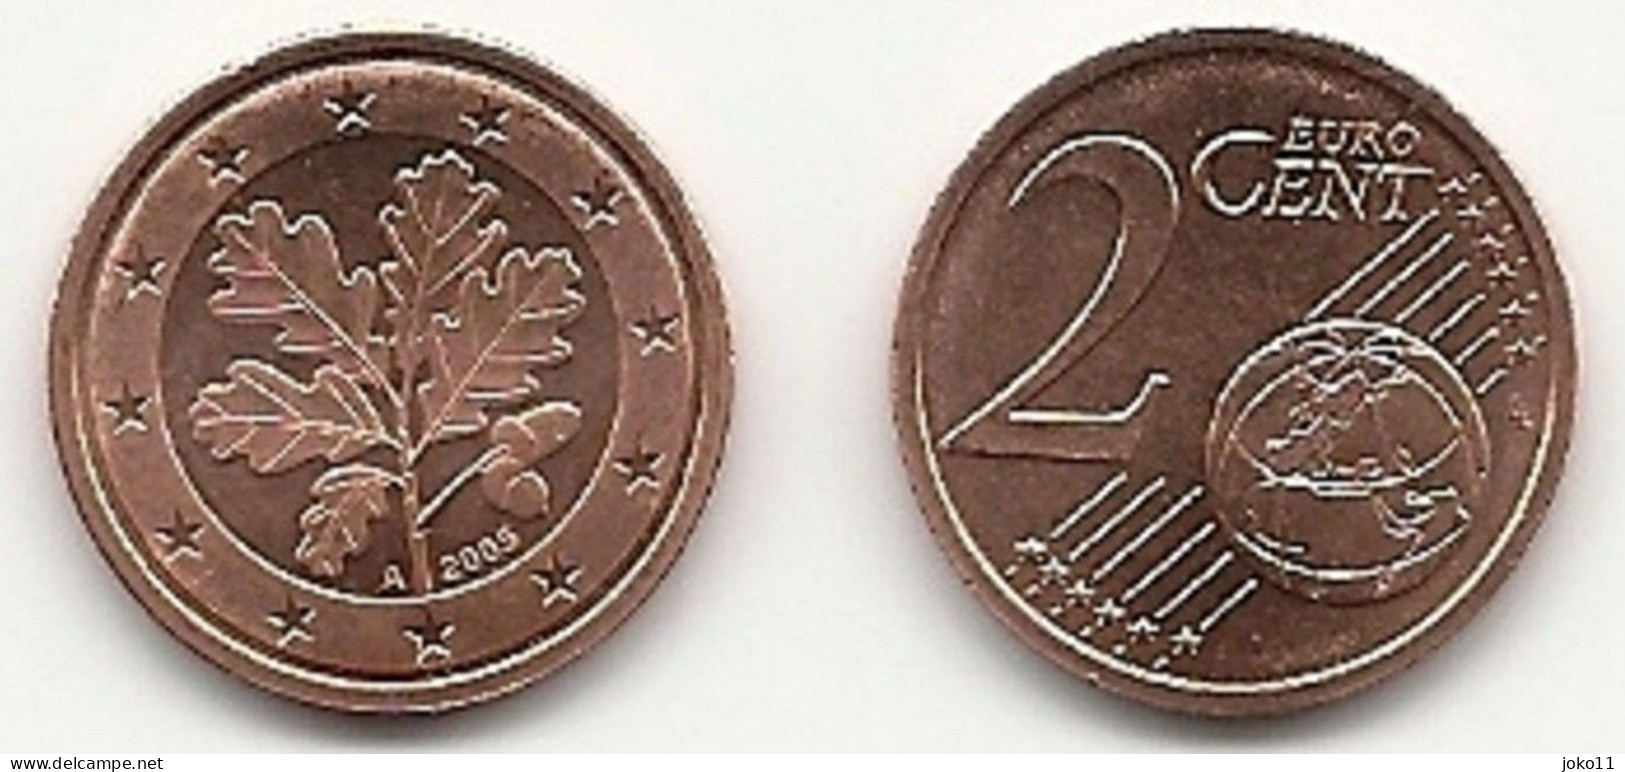 2 Cent, 2005 Prägestätte (A) Vz, Sehr Gut Erhaltene Umlaufmünze - Germany